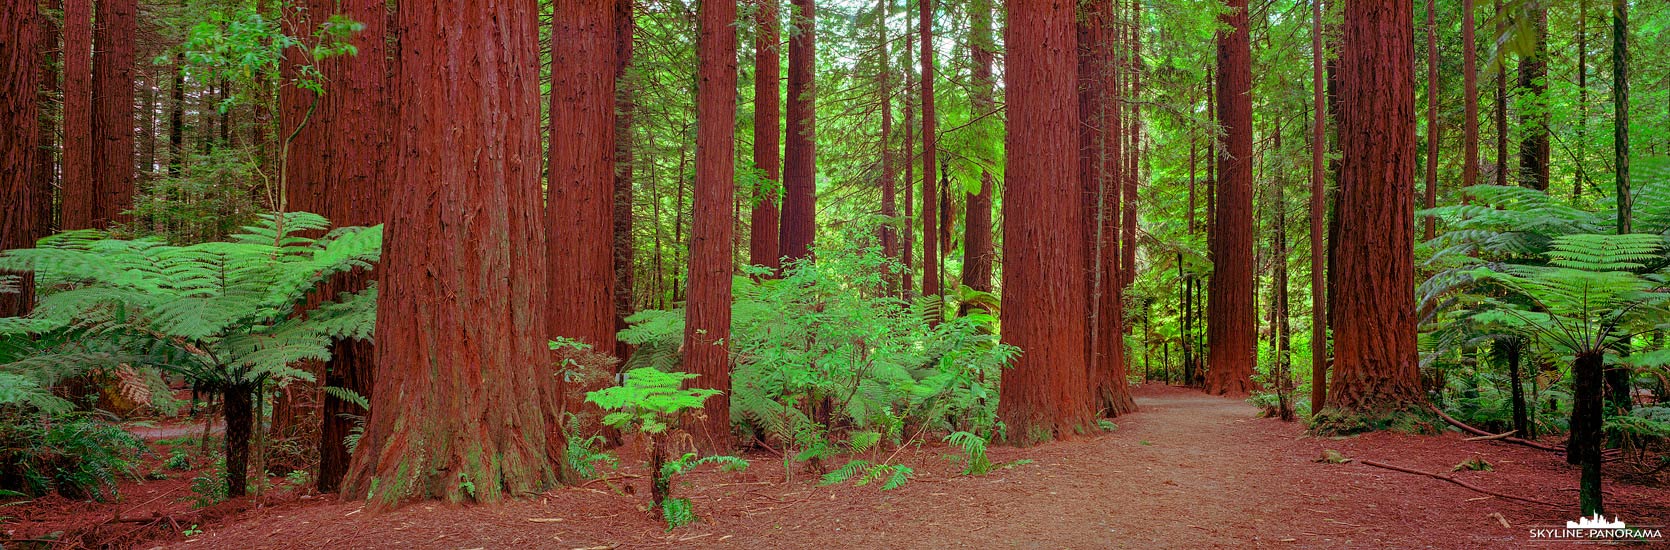 Redwoods Whakarewarewa Forest - Rotorua NZ (p_01141)